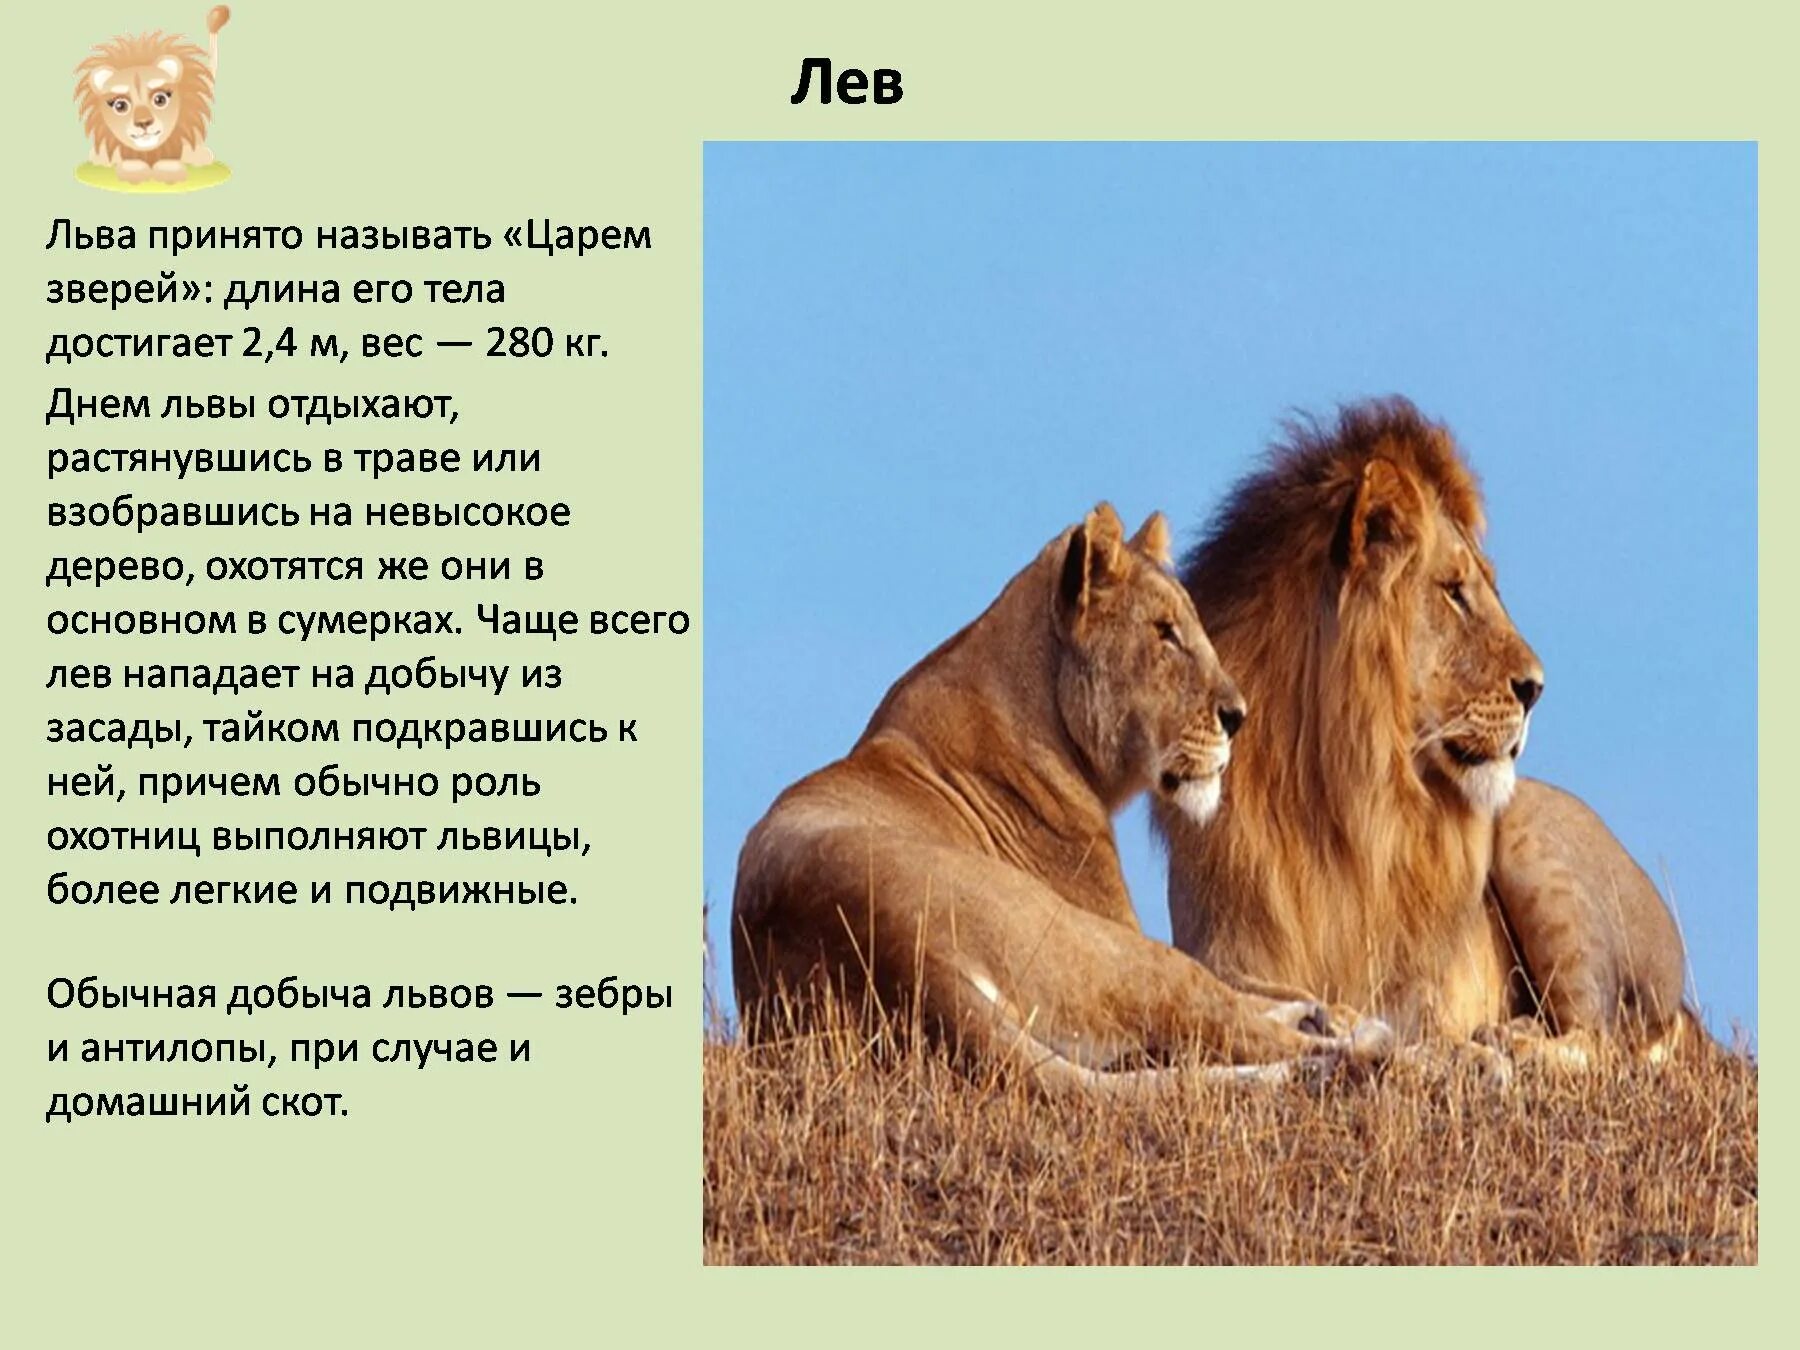 Доклад о животных. Описание Льва. Рассказ про Льва. Презентация про животных.